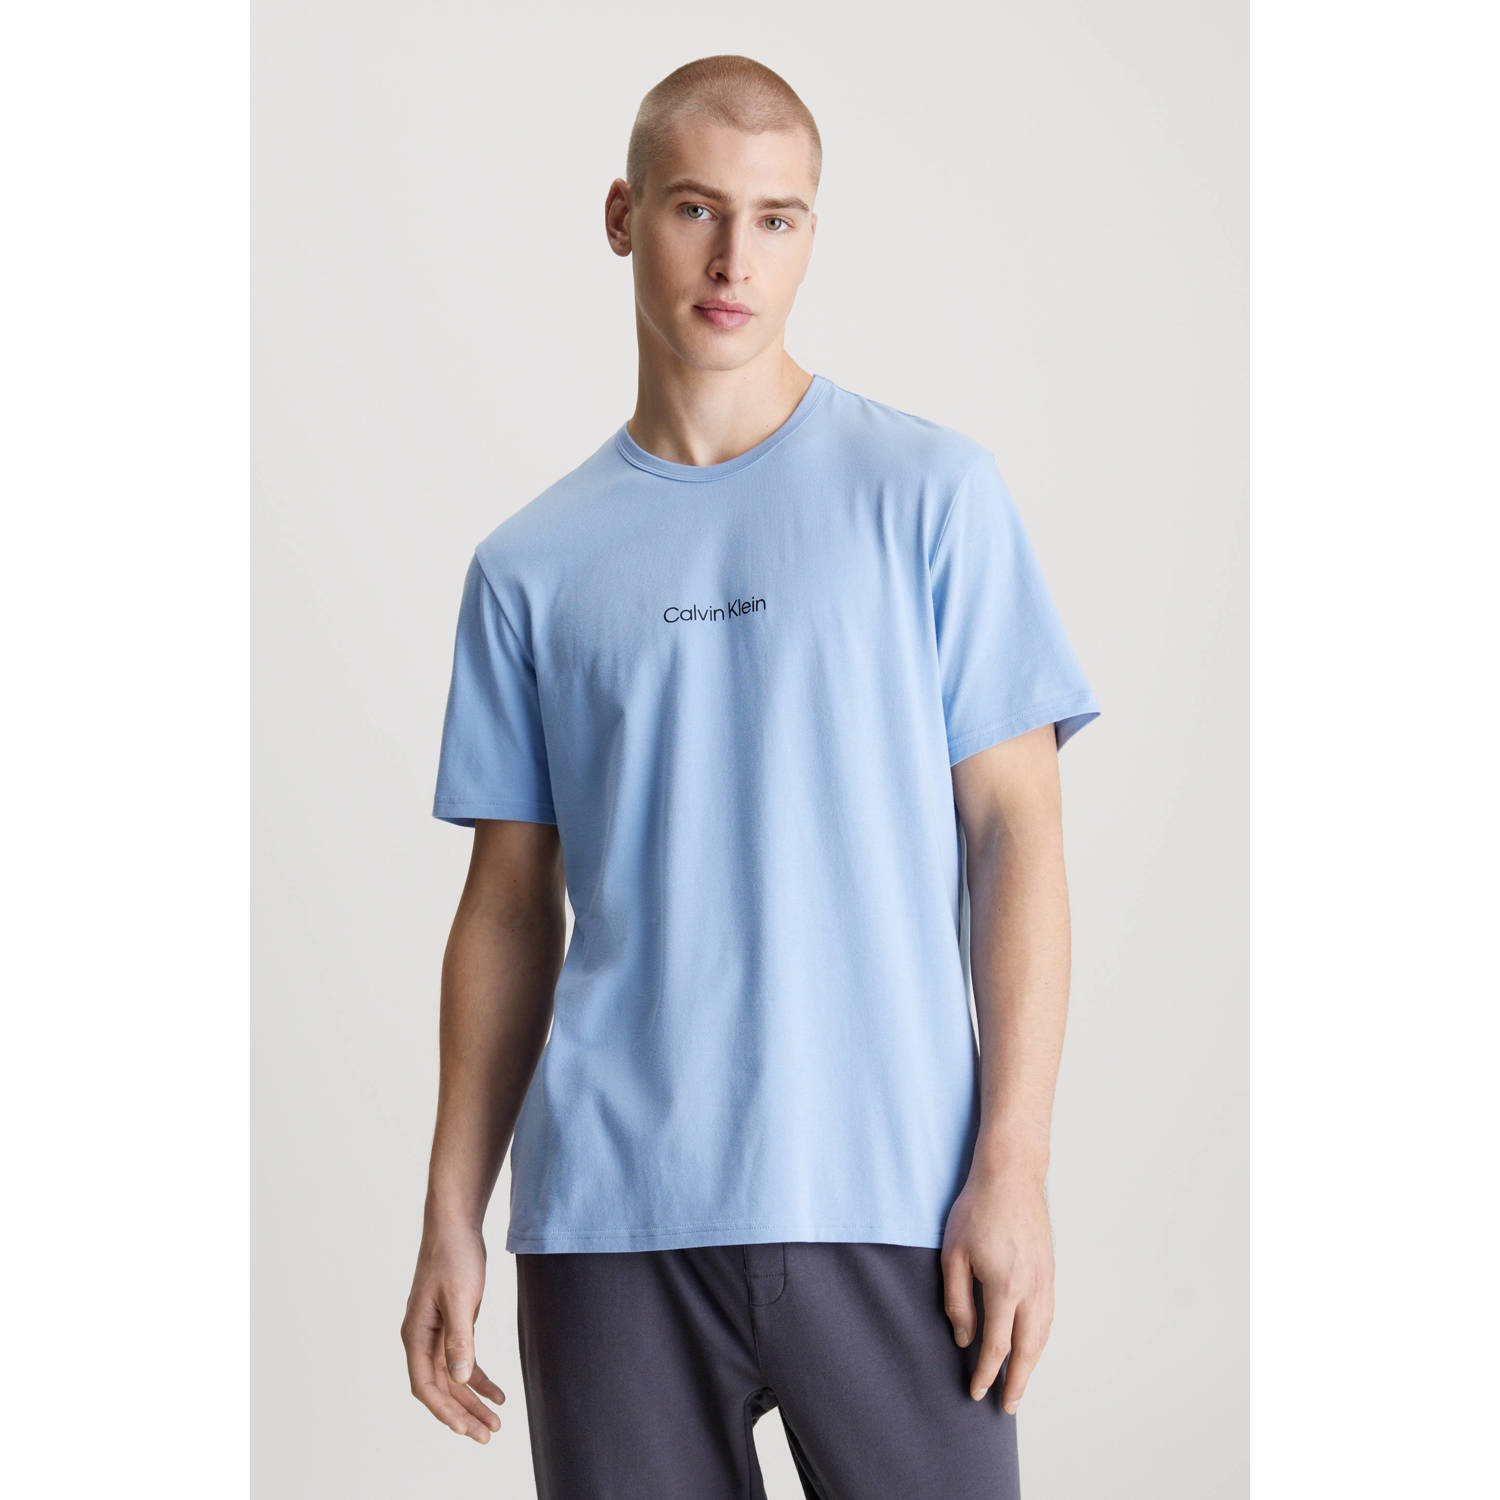 Calvin Klein UNDERWEAR T-shirt lichtblauw